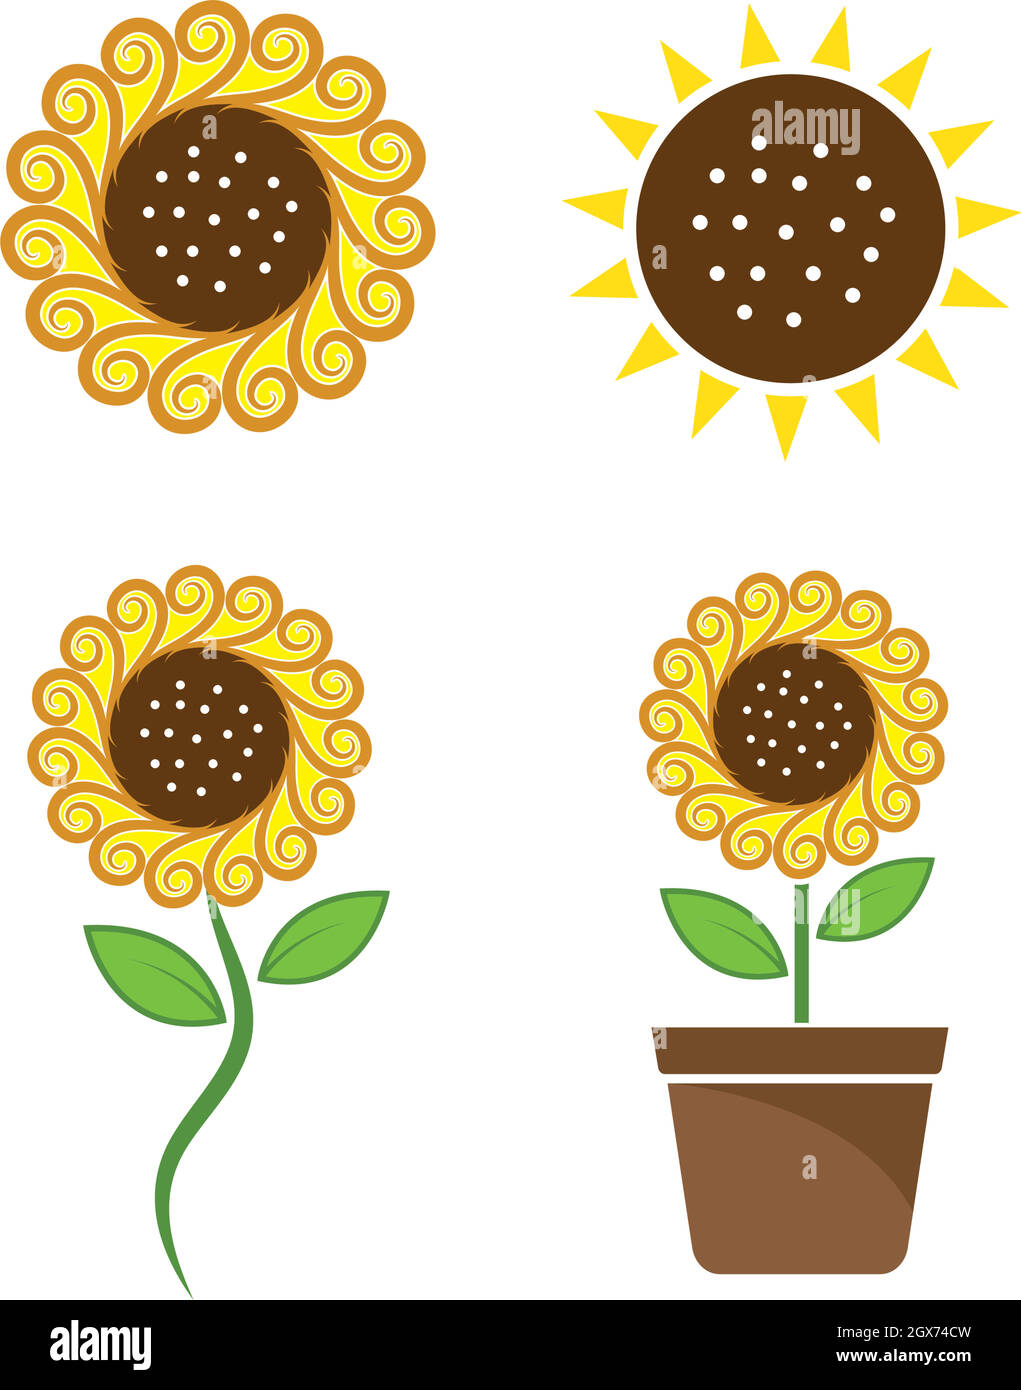 Sunflower logo icon vector Stock Vector